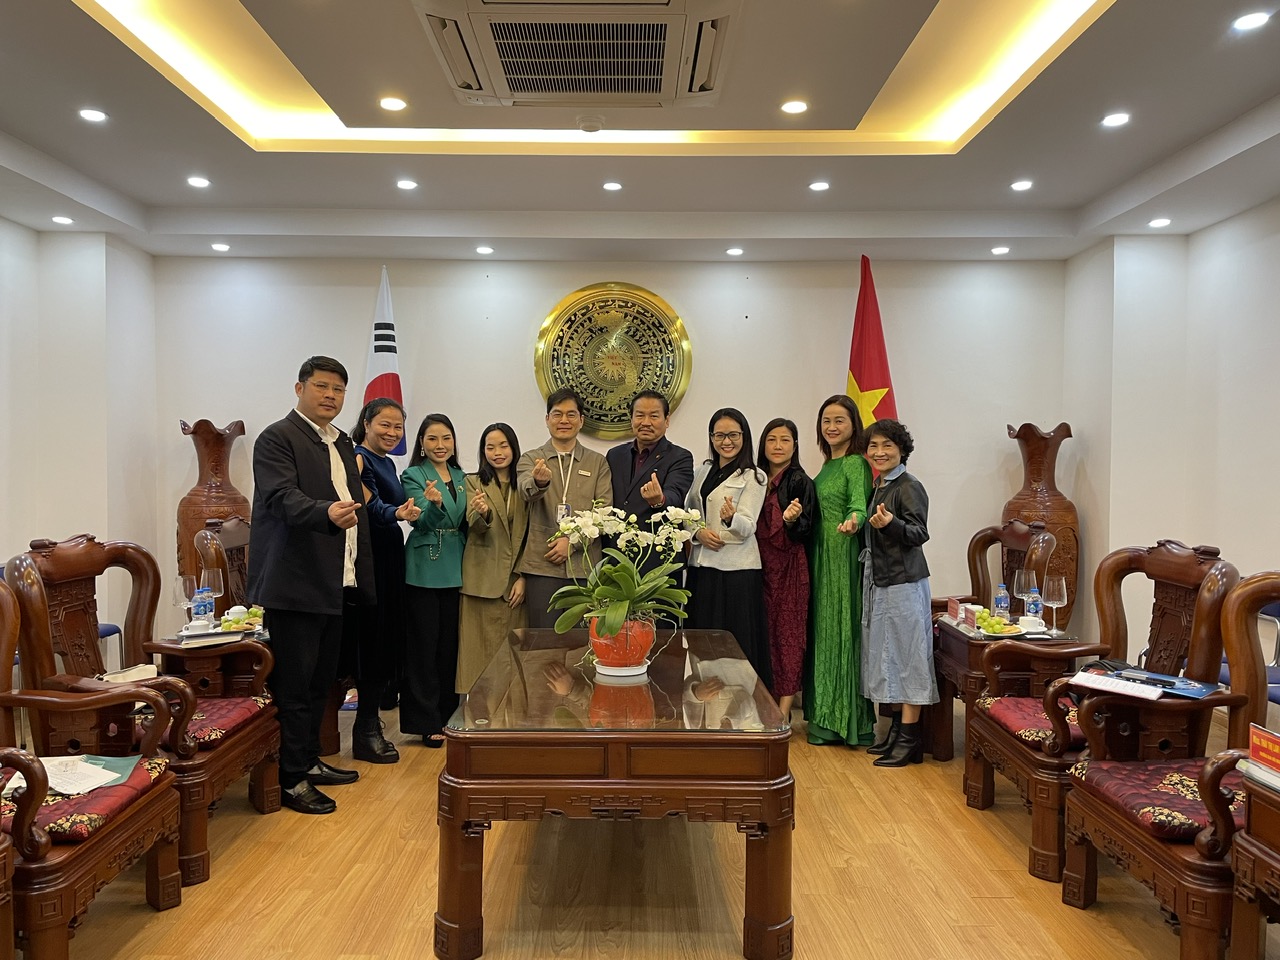 Quỹ Hỗ trợ sáng tạo Văn học nghệ thuật Việt Nam gặp mặt đại diện tổ chức hợp tác quốc tế WITHUS Hàn Quốc - 3